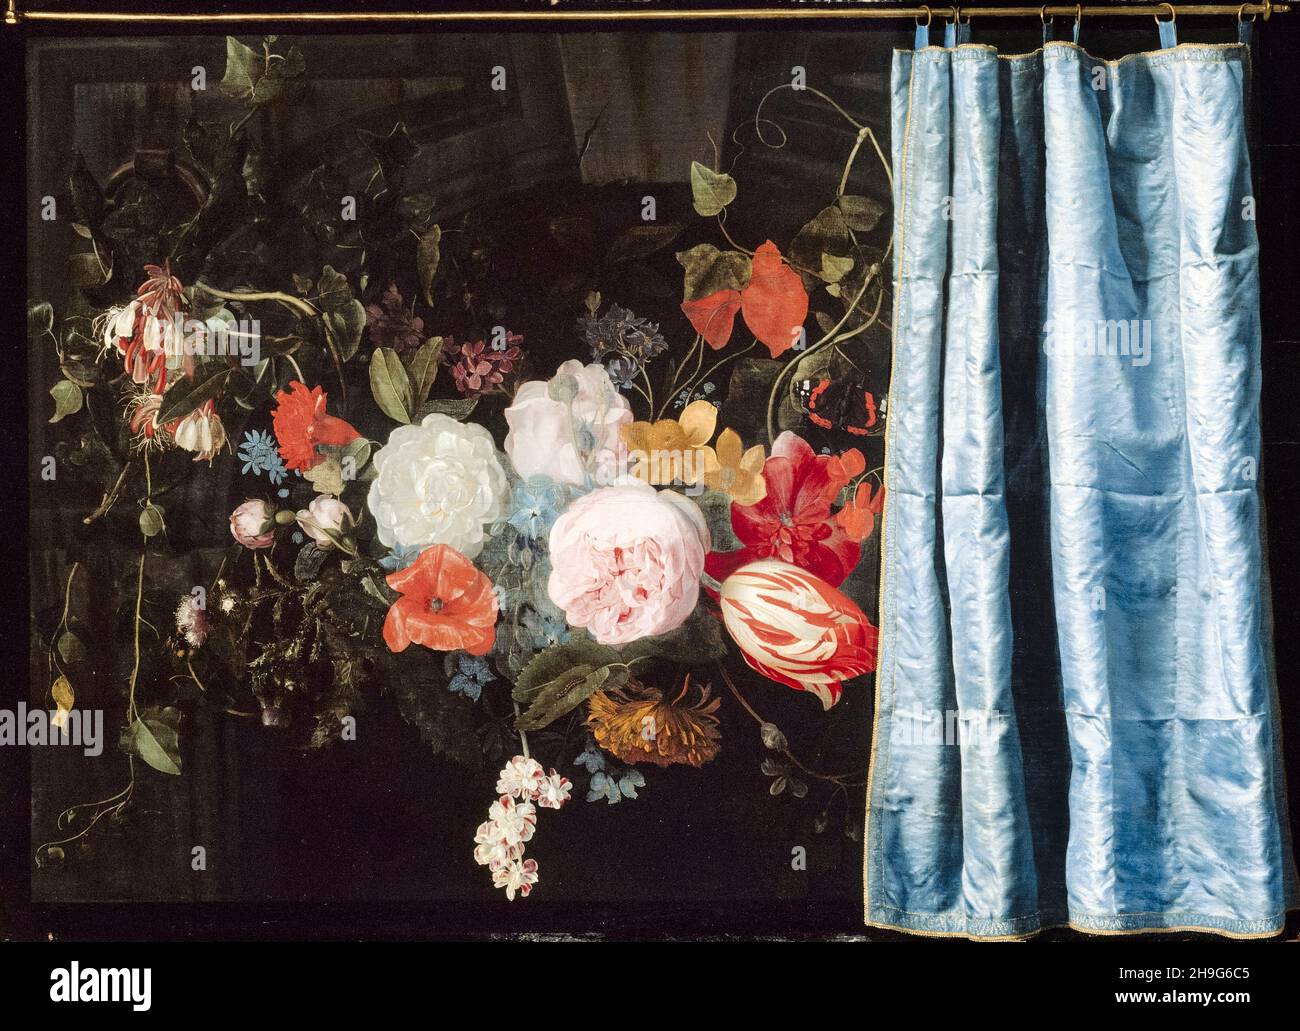 Adriaen van der spelt, Frans van Mieris, trompe-l'oeil: Encore la vie avec un guirlande de fleurs et un rideau, peinture, 1658 Banque D'Images